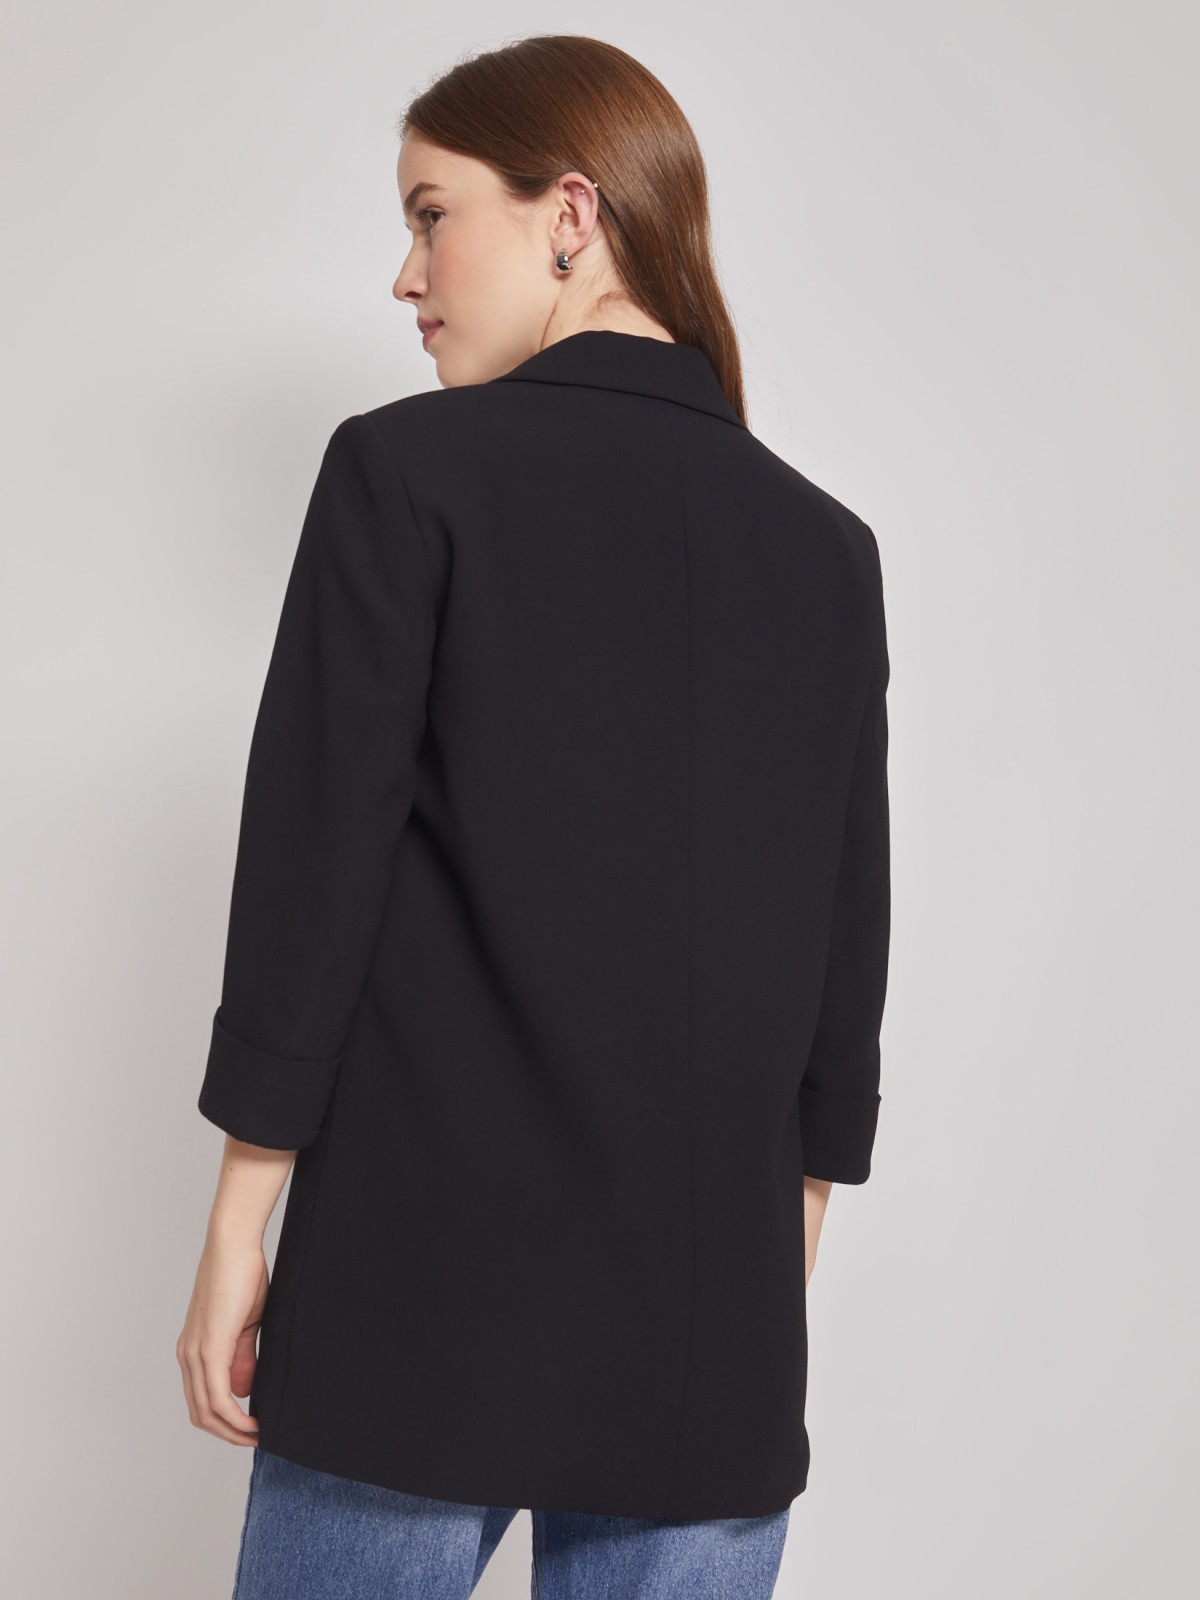 Однобортный пиджак на пуговице zolla 022115466103, цвет черный, размер XS - фото 5